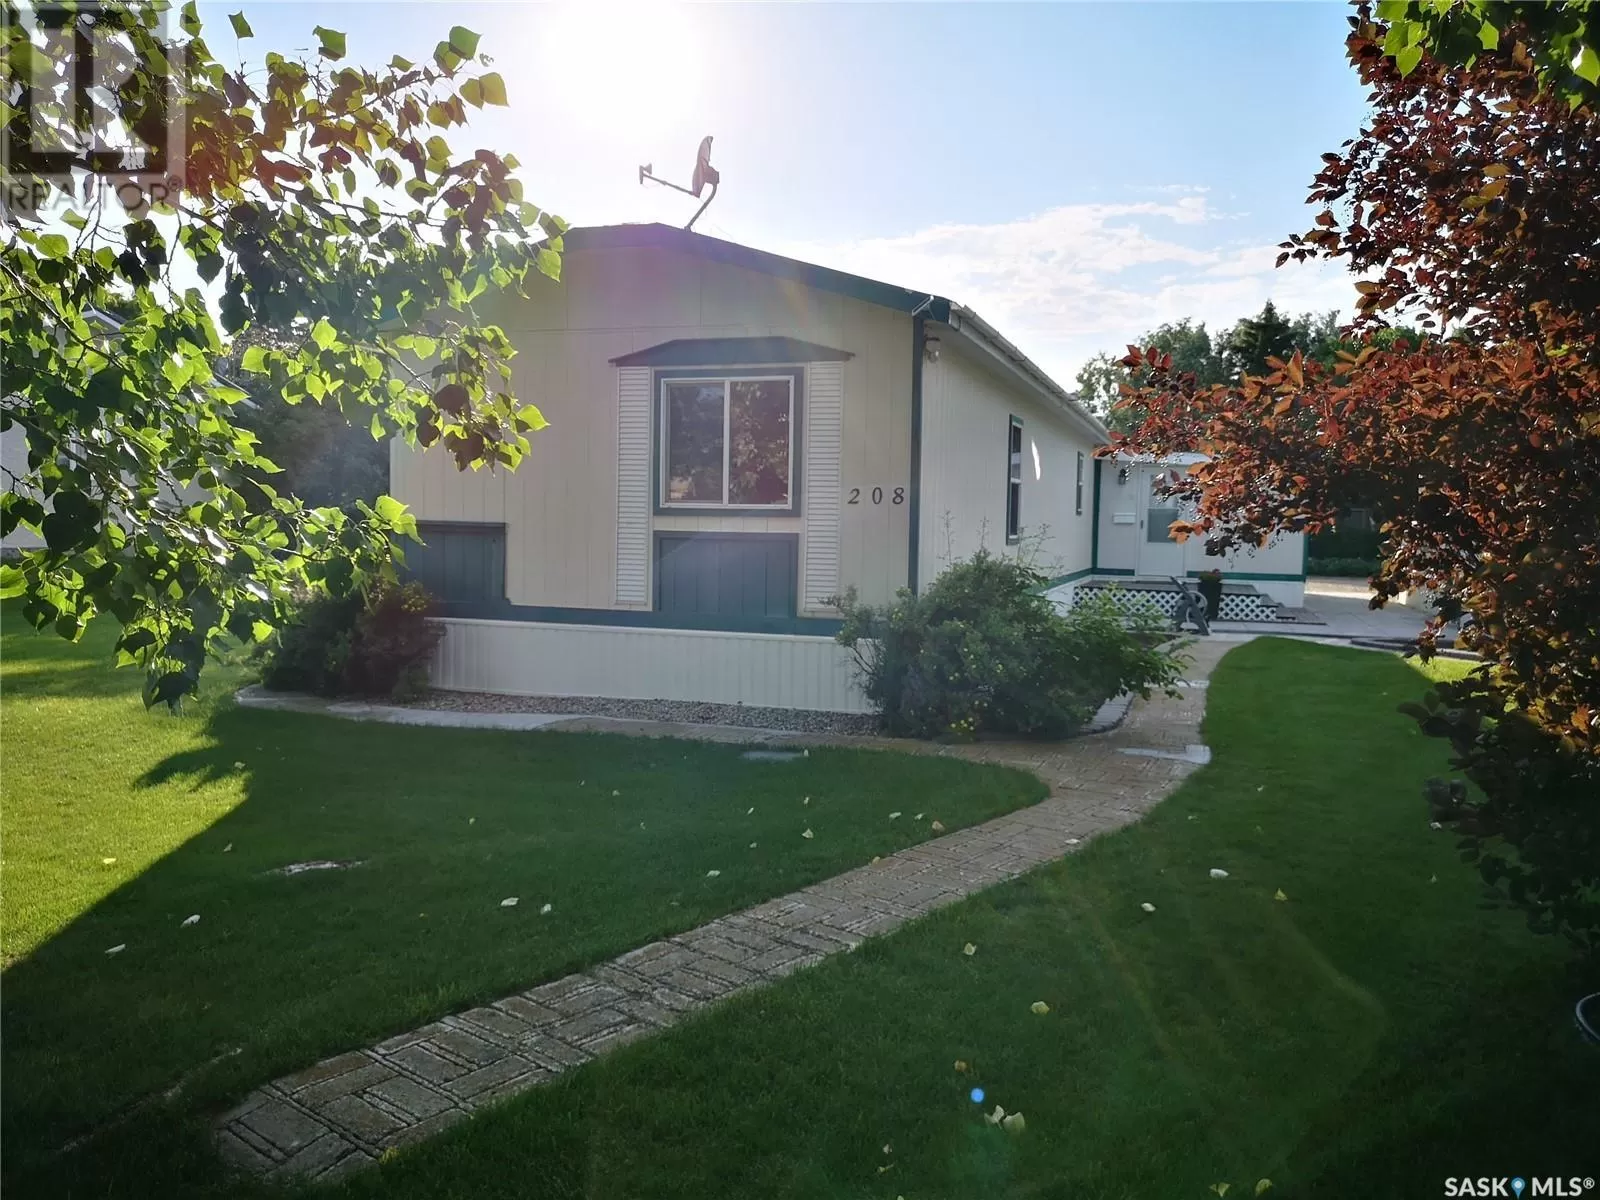 Mobile Home for rent: 208 Tyvan Street, Francis, Saskatchewan S0G 1V0